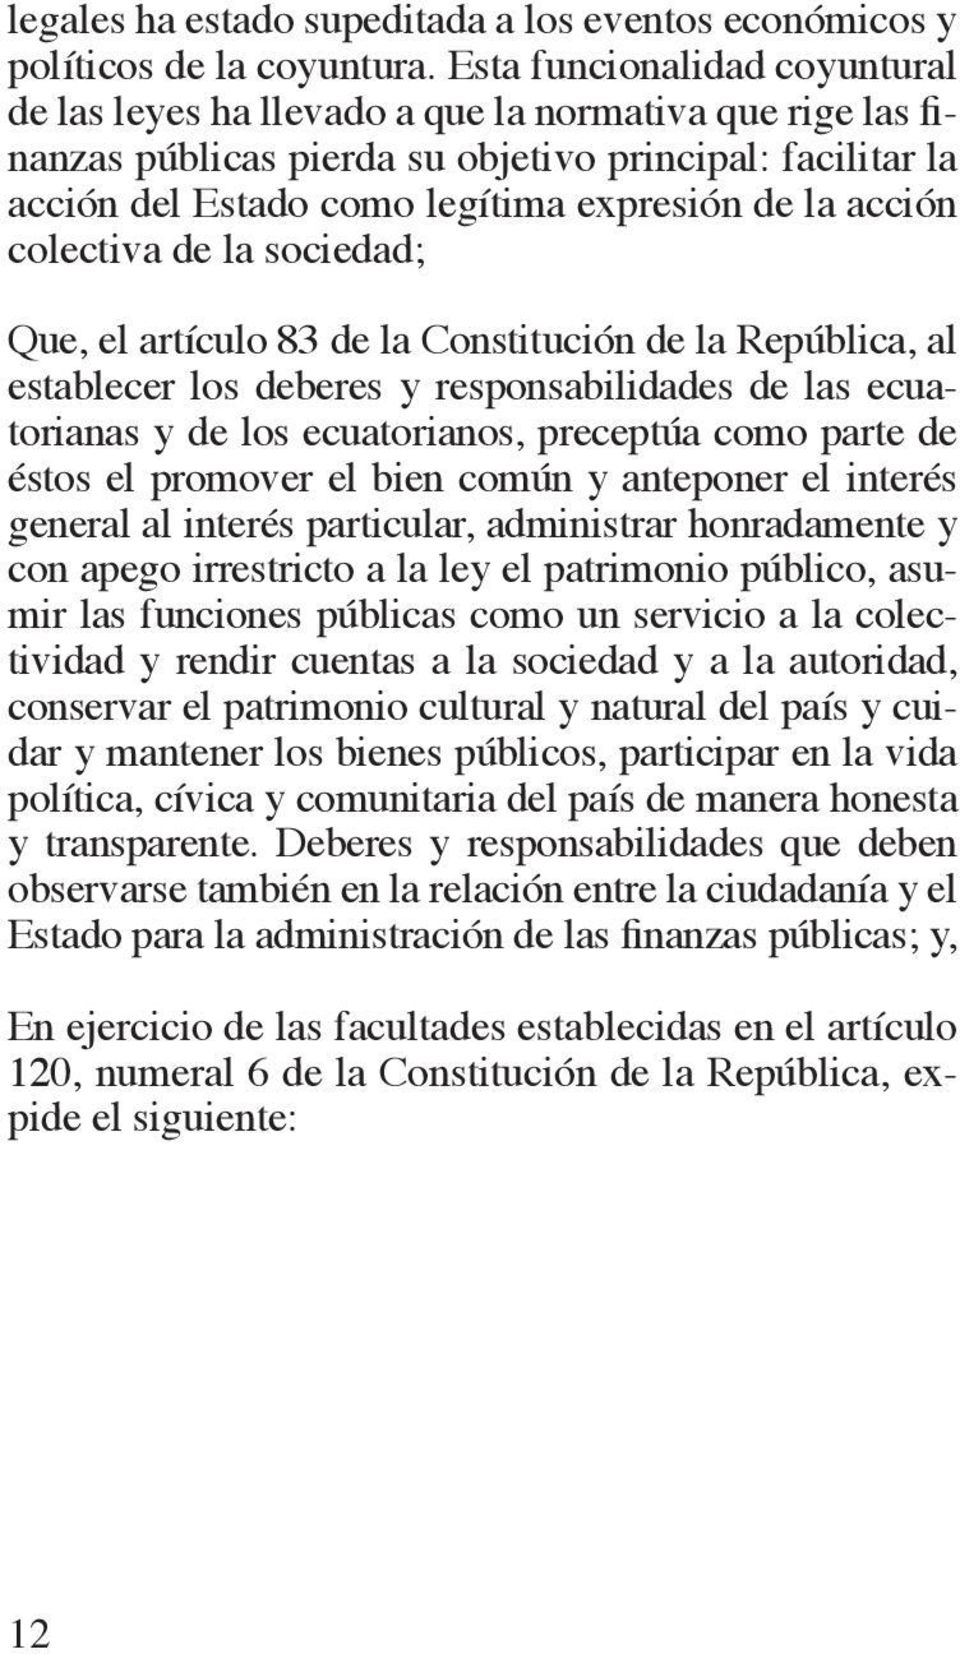 acción colectiva de la sociedad; Que, el artículo 83 de la Constitución de la República, al establecer los deberes y responsabilidades de las ecuatorianas y de los ecuatorianos, preceptúa como parte